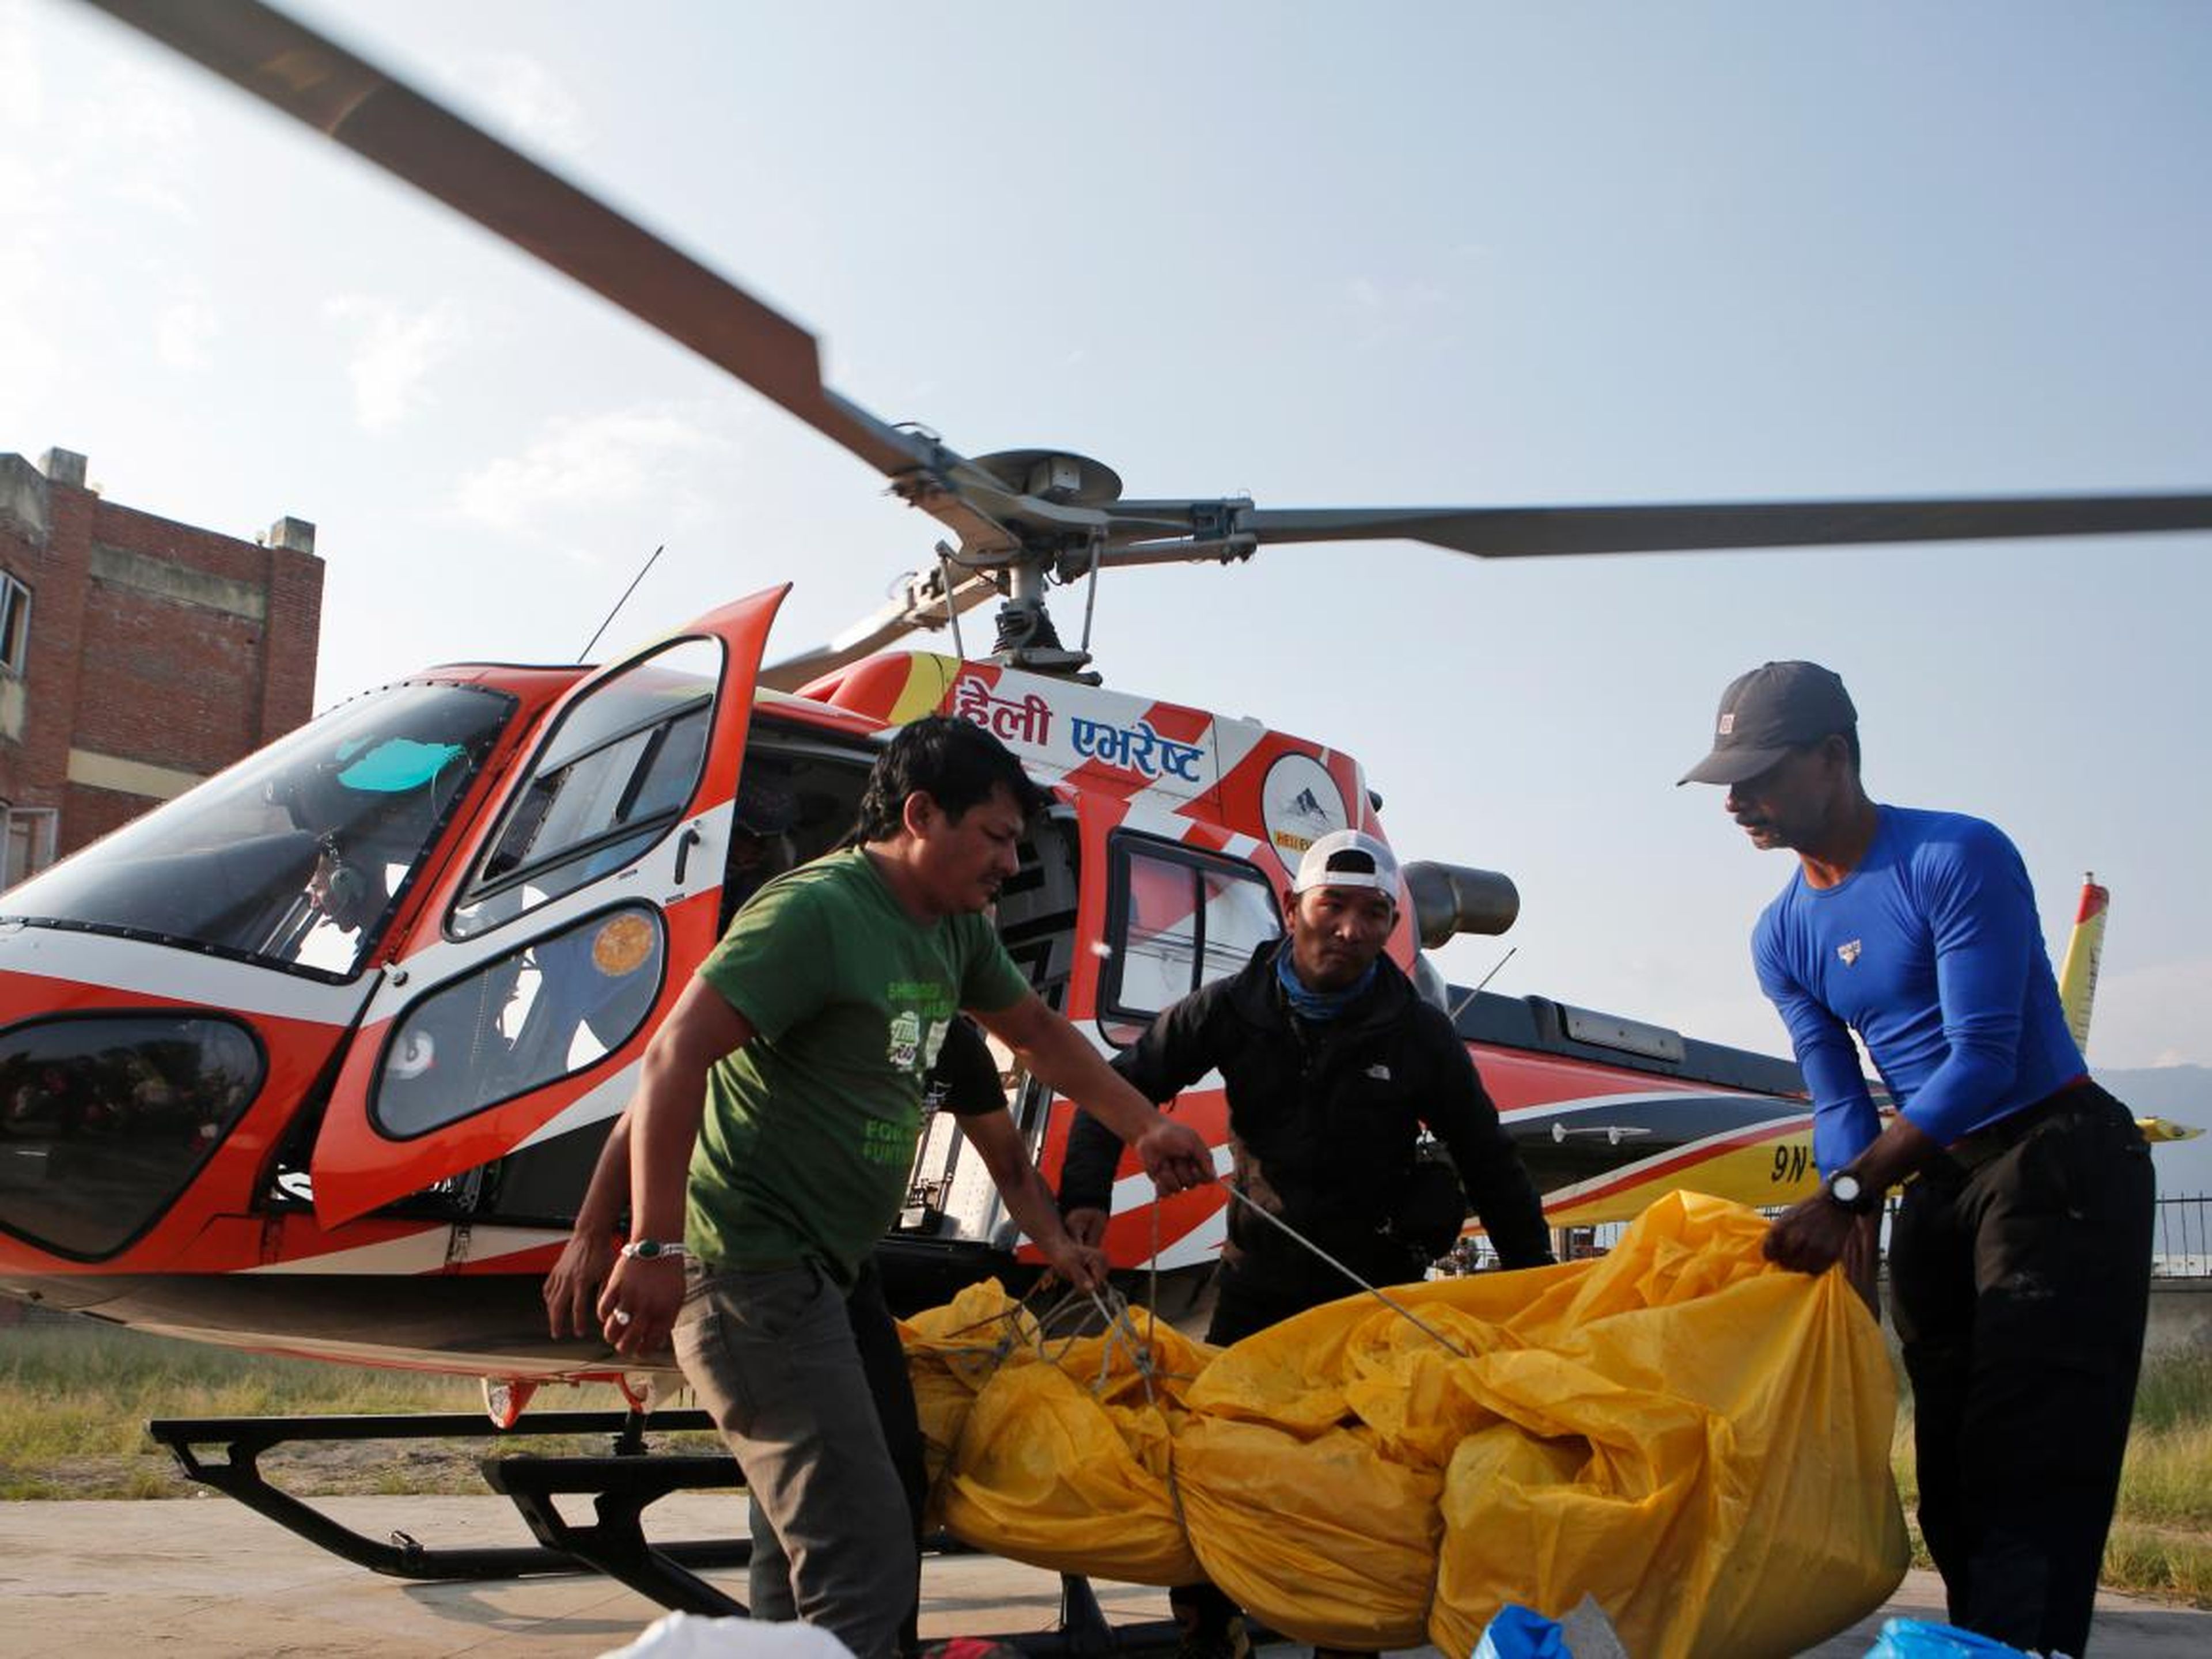 Los cuerpos de escaladores indios son bajados del helicóptero en Katmandú. Domingo 28 de mayo de 2017. Este año, los rescatadores encontraron los cuerpos de 3 indios que murieron en el Everest. Uno de ellos, Ravi Kumar, murió la semana pasada